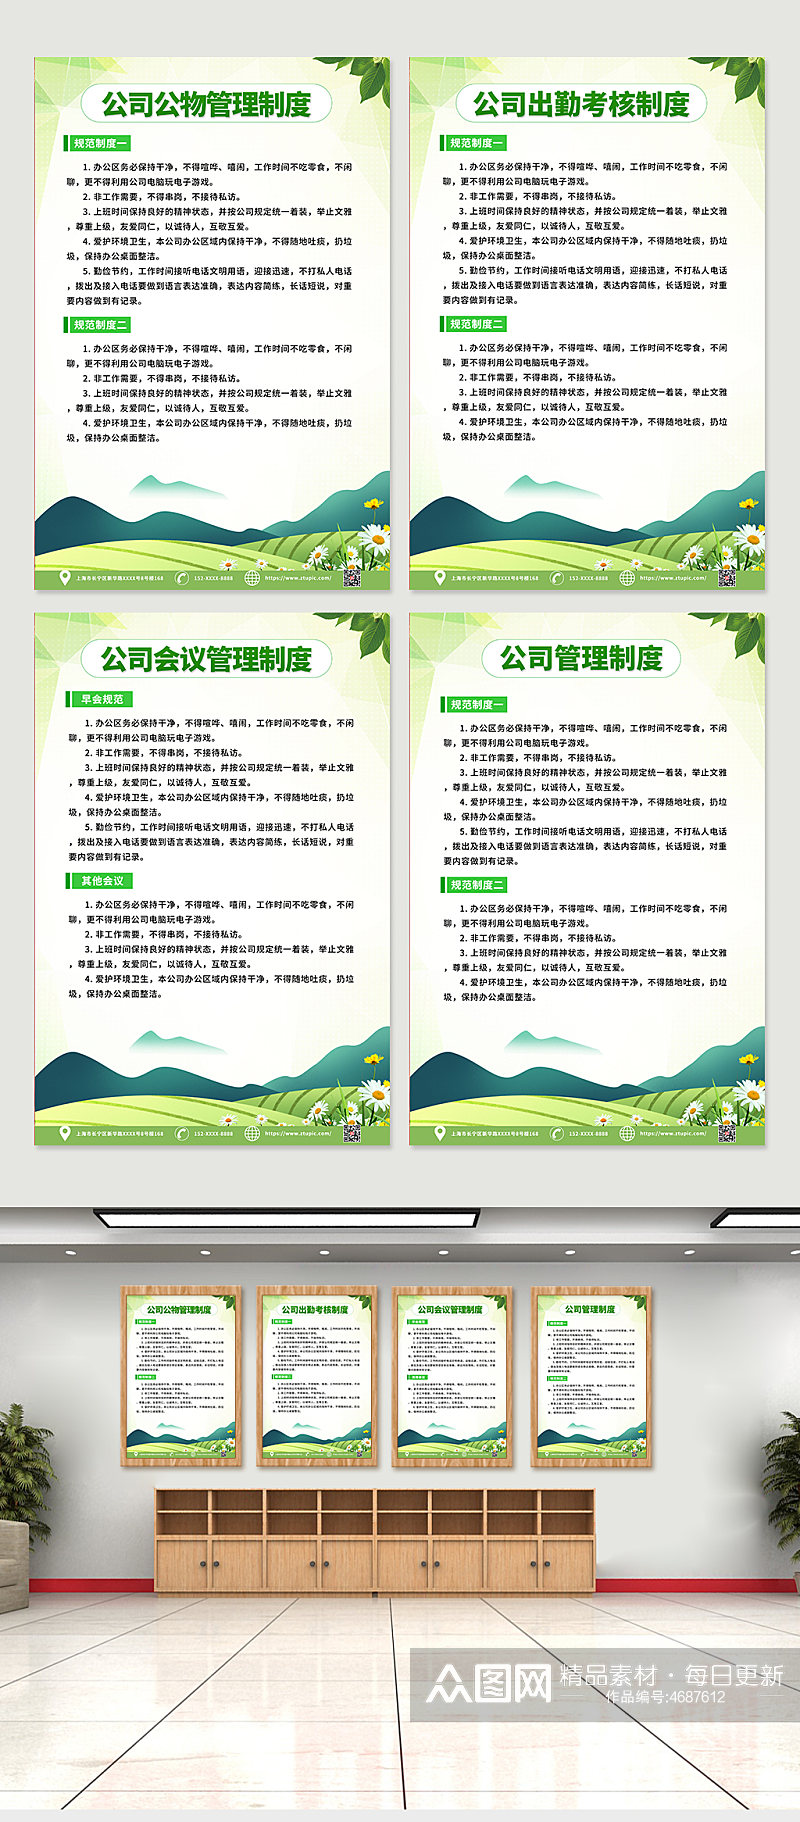 绿色物业管理条例制度牌系列海报素材